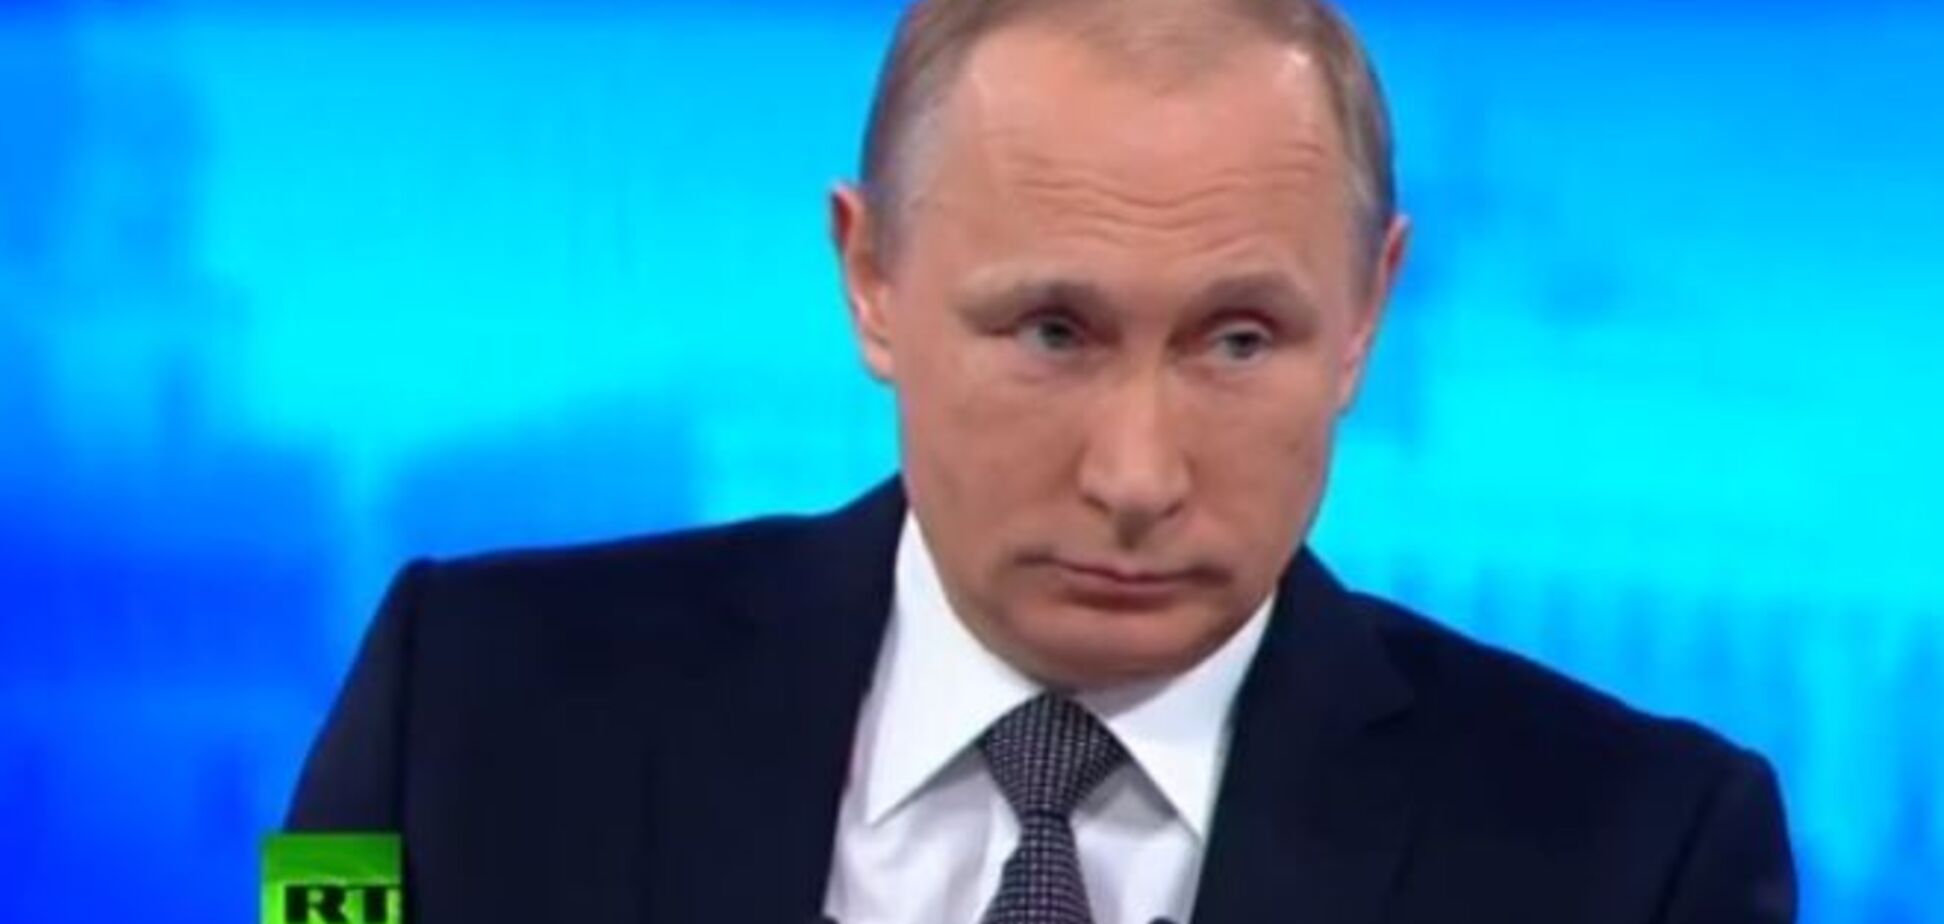 Путин отрицает, что Порошенко предлагал ему забрать Донбасс